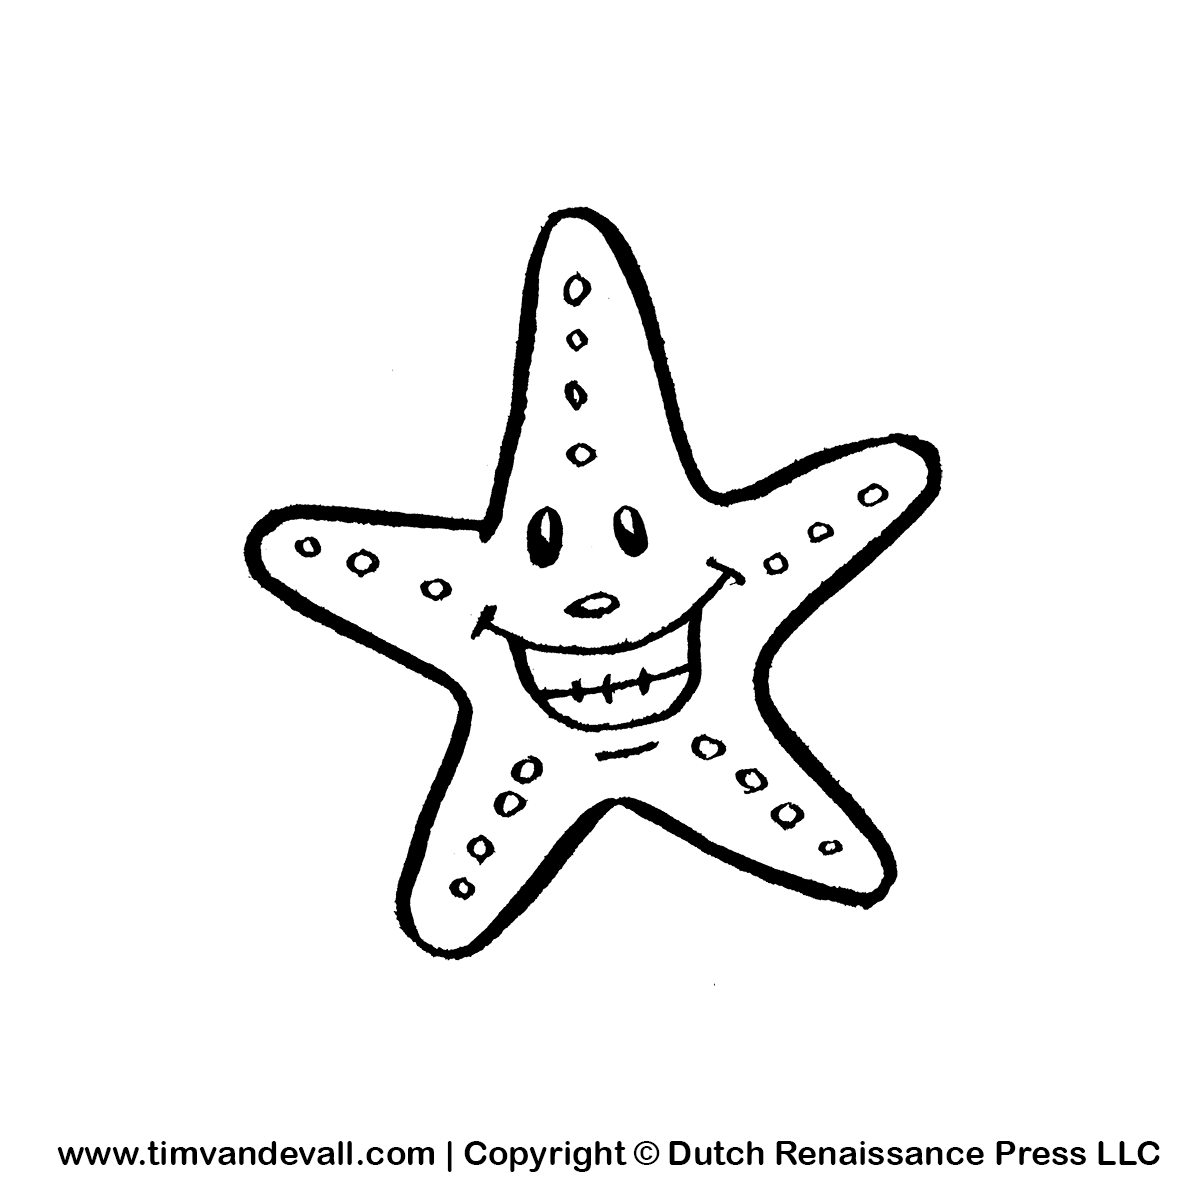 Starfish Clipart